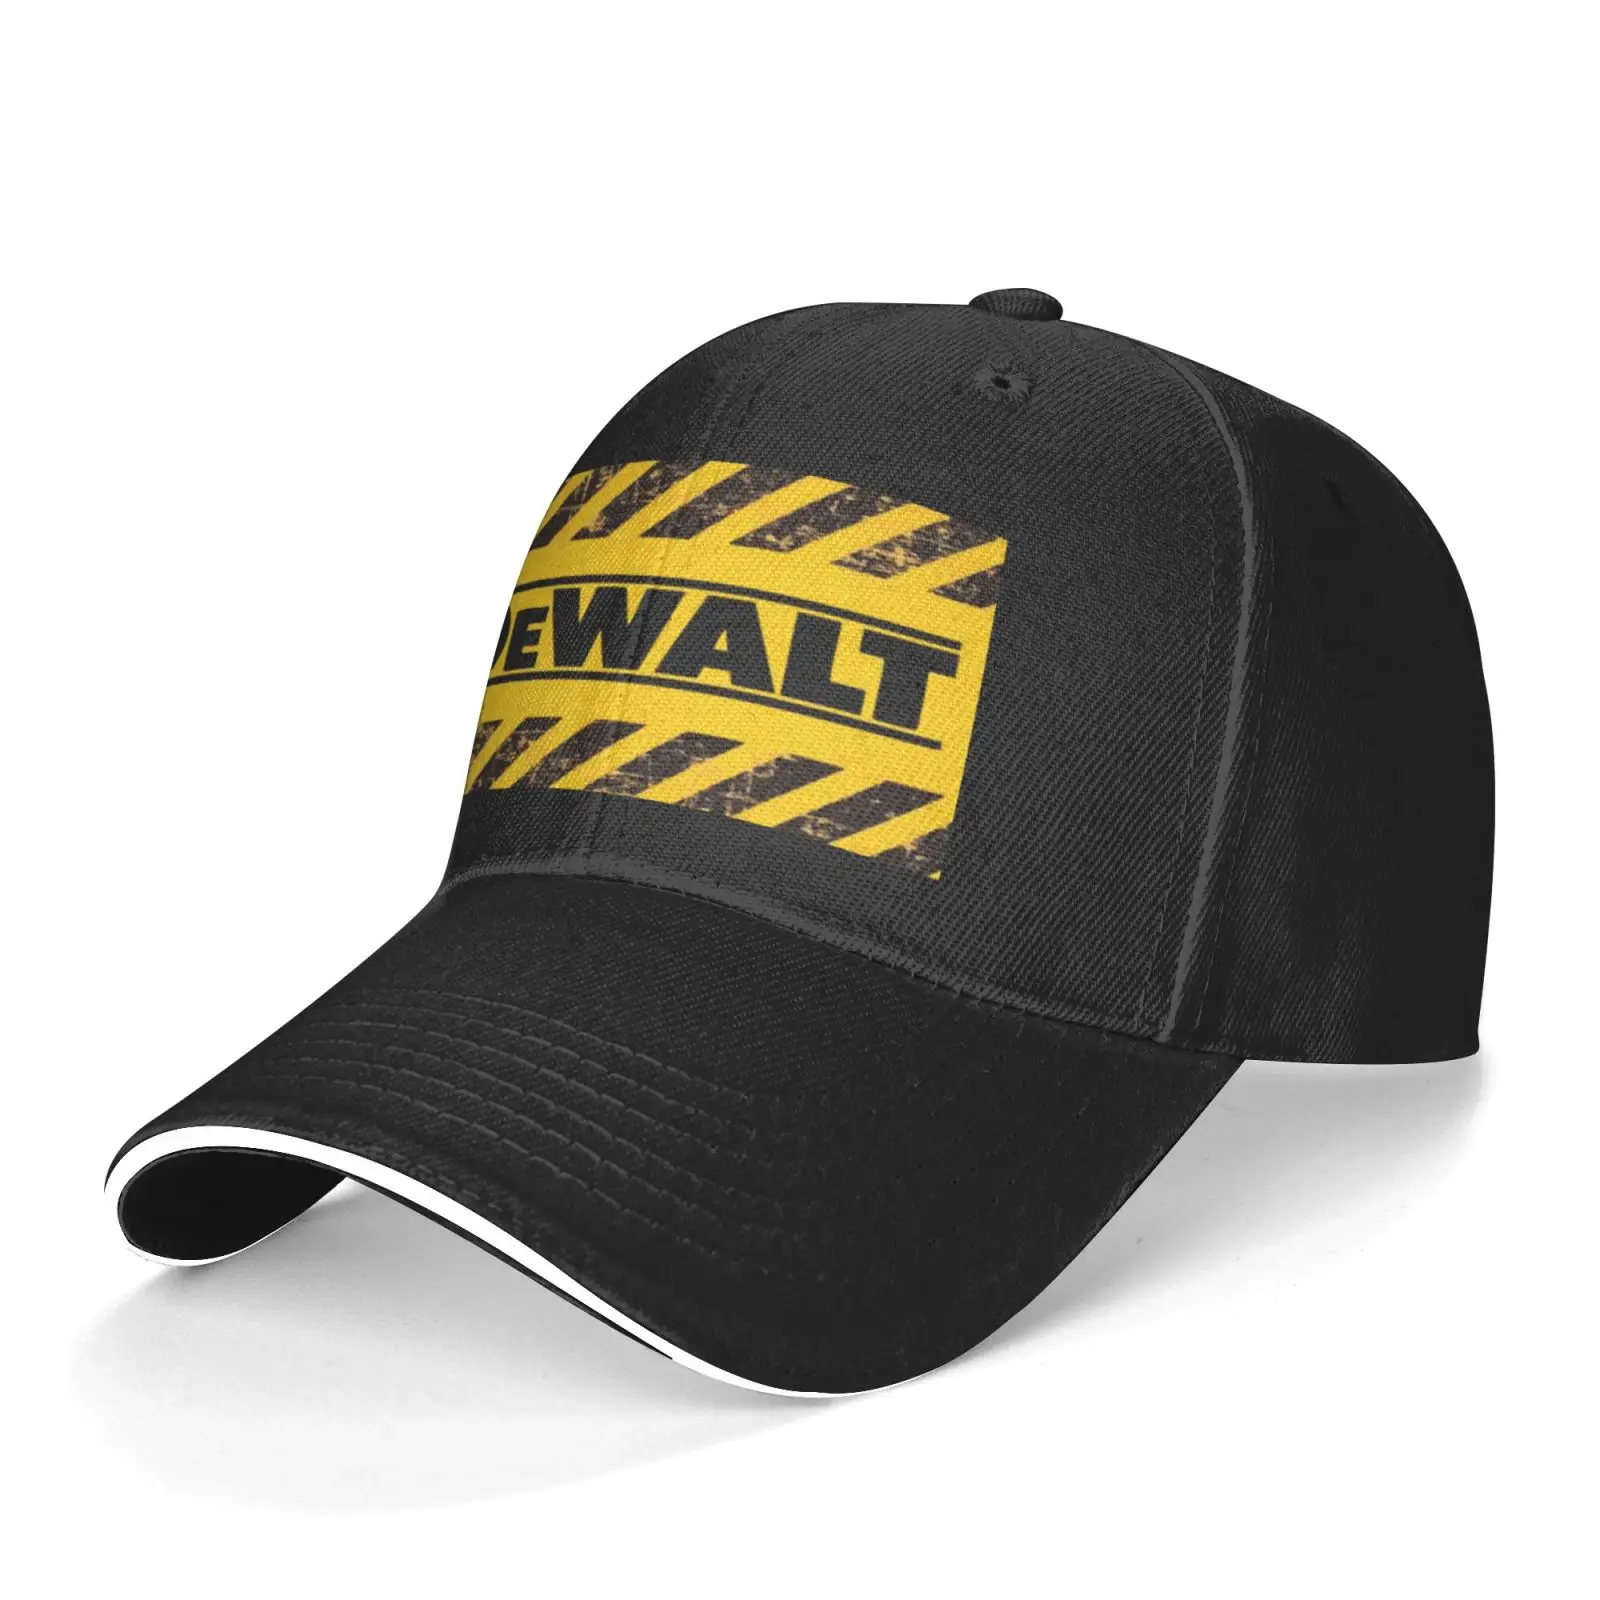 Кепка DeWalt 620, Мужская Балаклава, вязаная Балаклава, летняя шапка, бейсболка s, дизайнерская шапка, Мужская кепка, женская мужская шапка, пляжн...